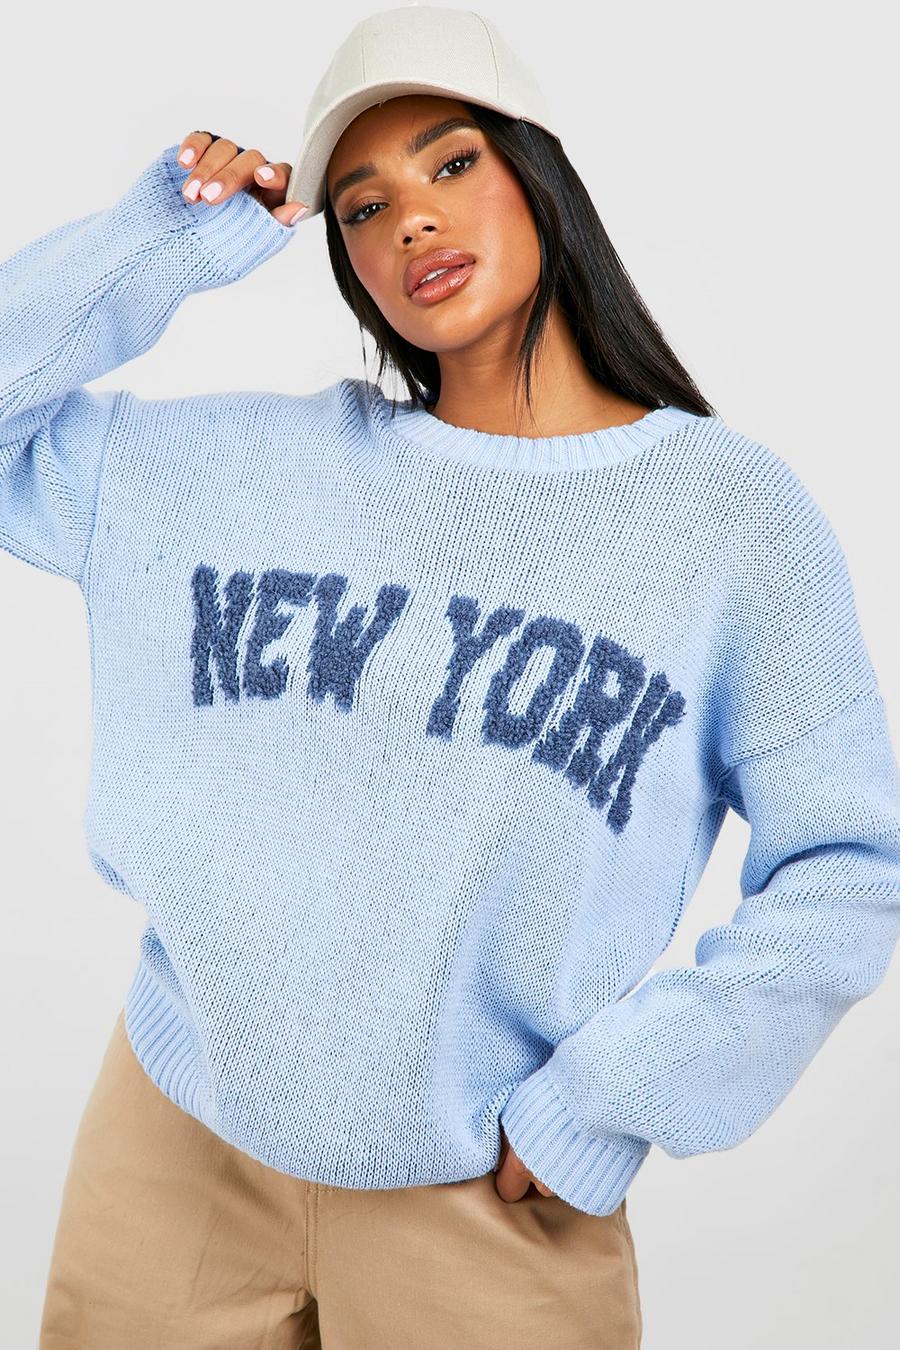 Maglione con slogan New York e trama, Blue